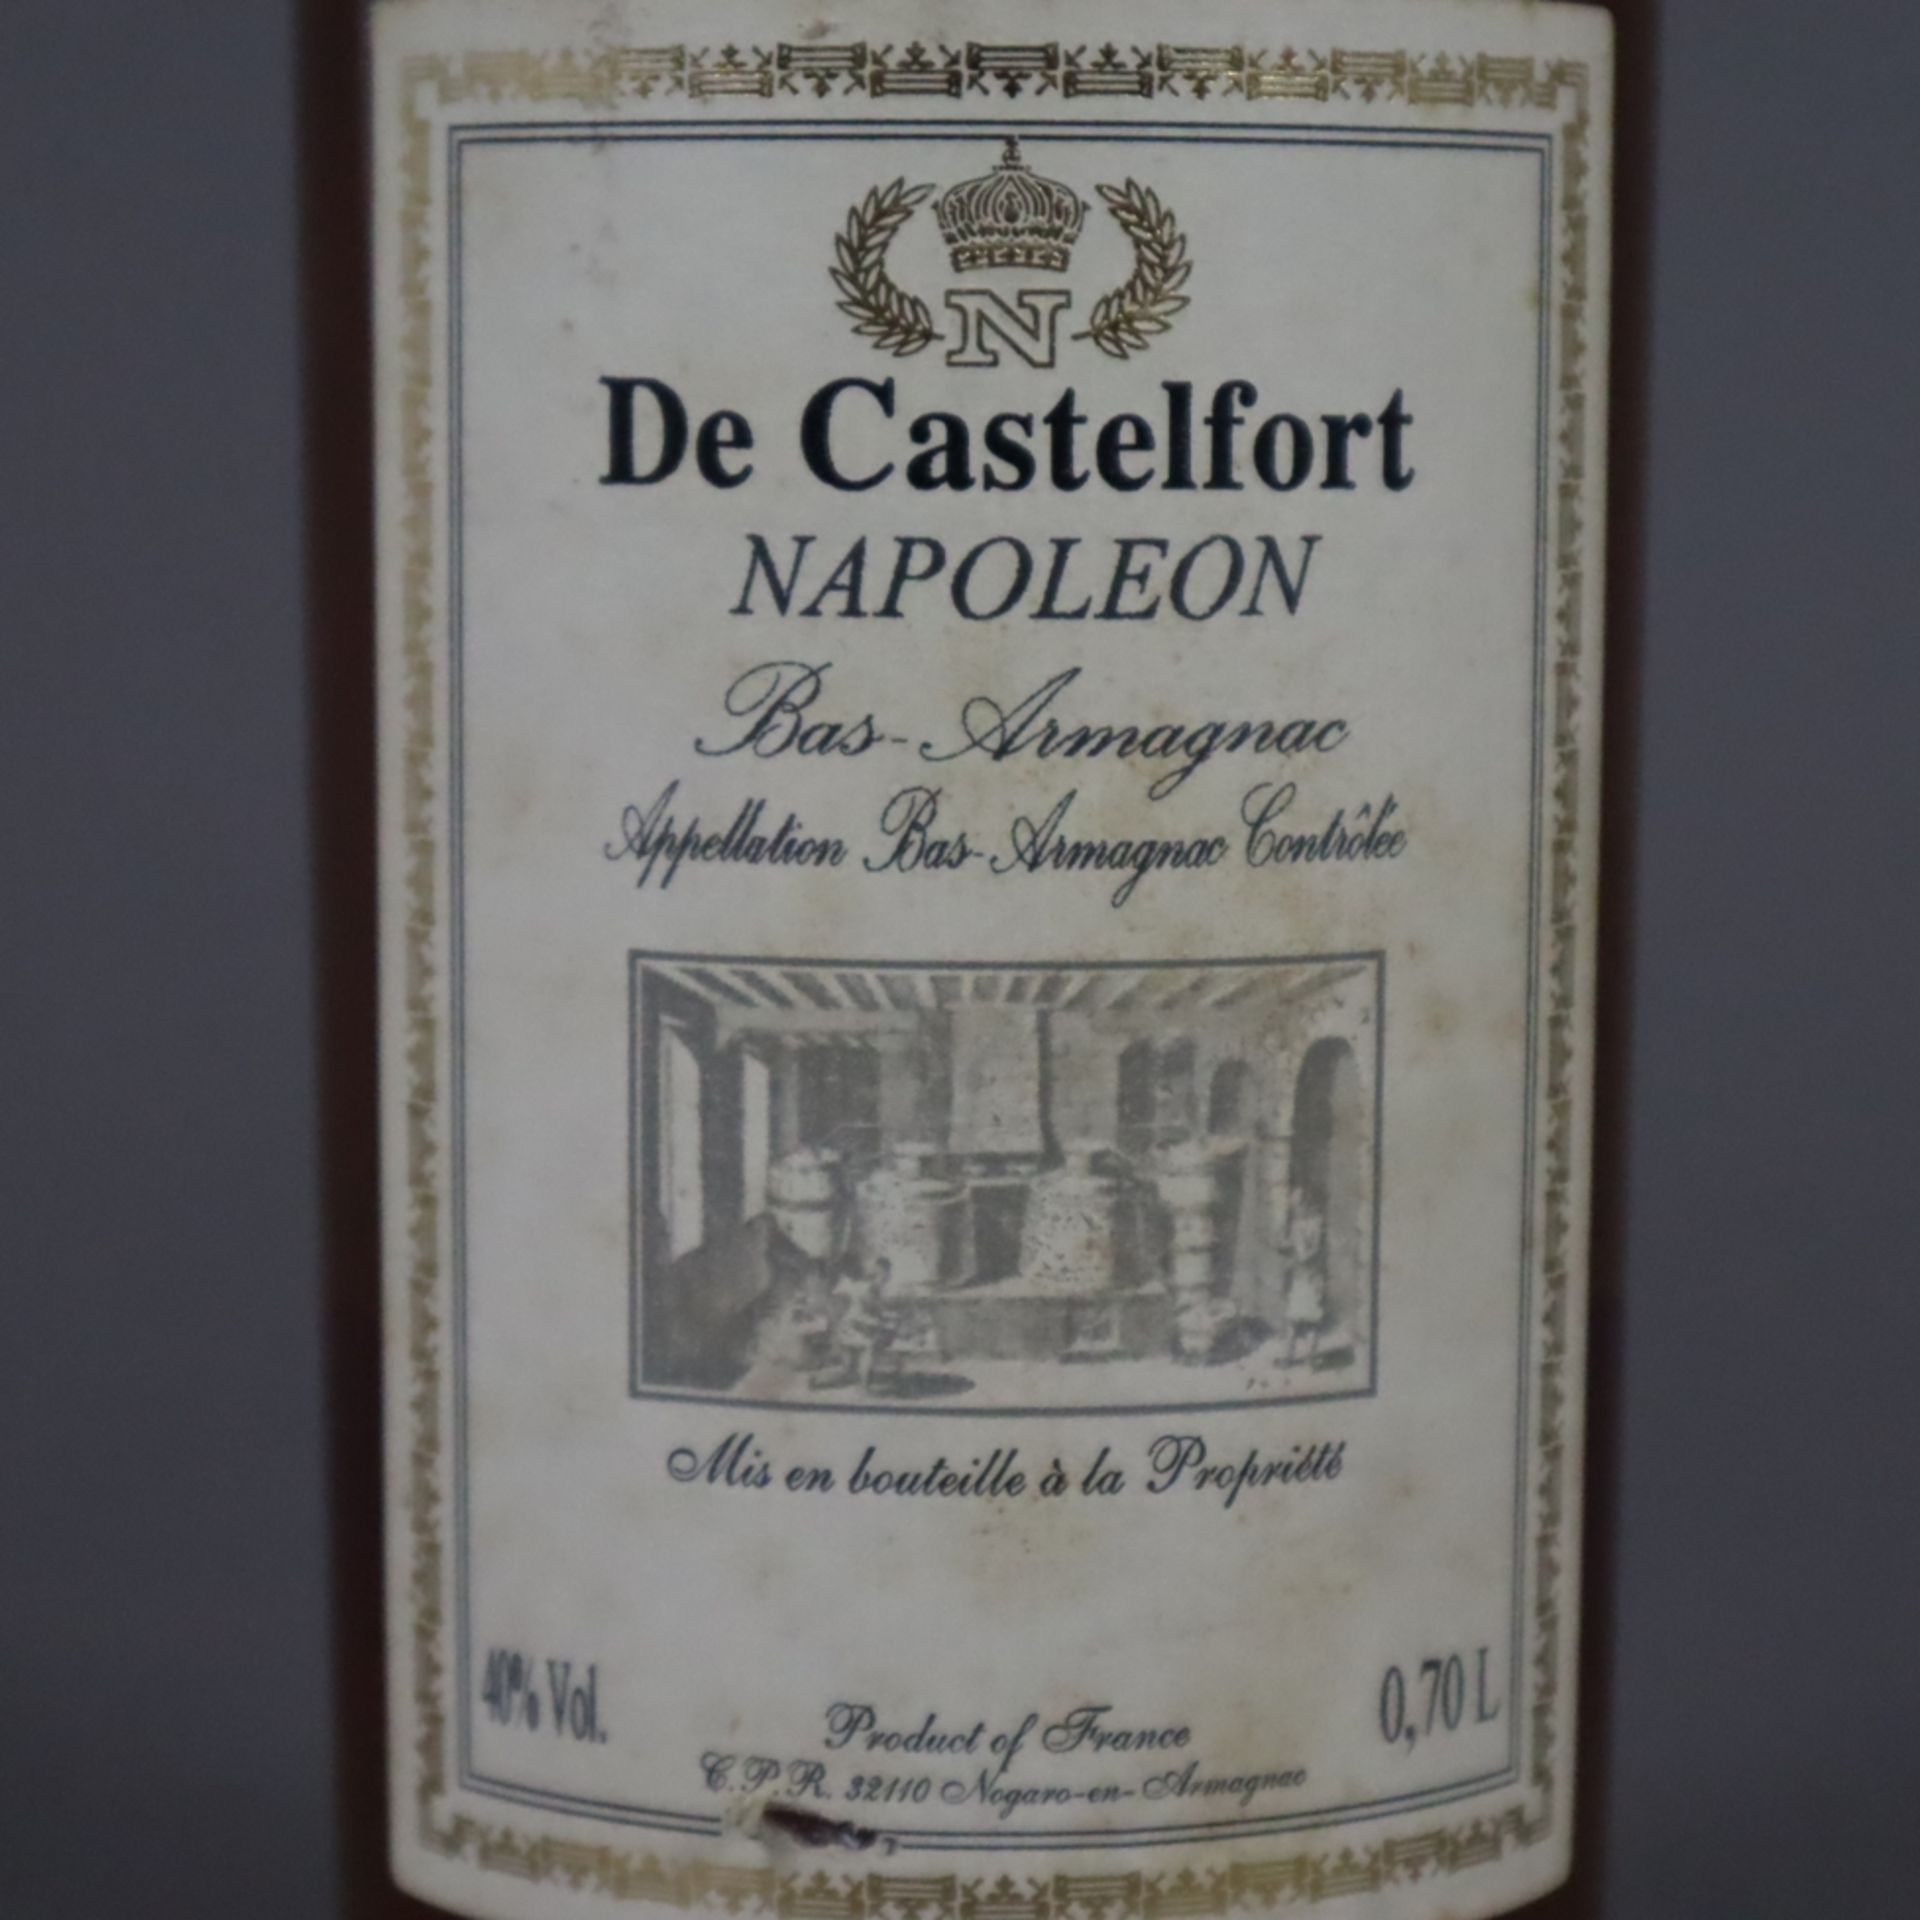 Bas-Armagnac - DE CASTELFORT NAPOLEON, abgefüllt 2015, im Eichenfass gelagert, 0,7 Liter, Versiegel - Bild 3 aus 6